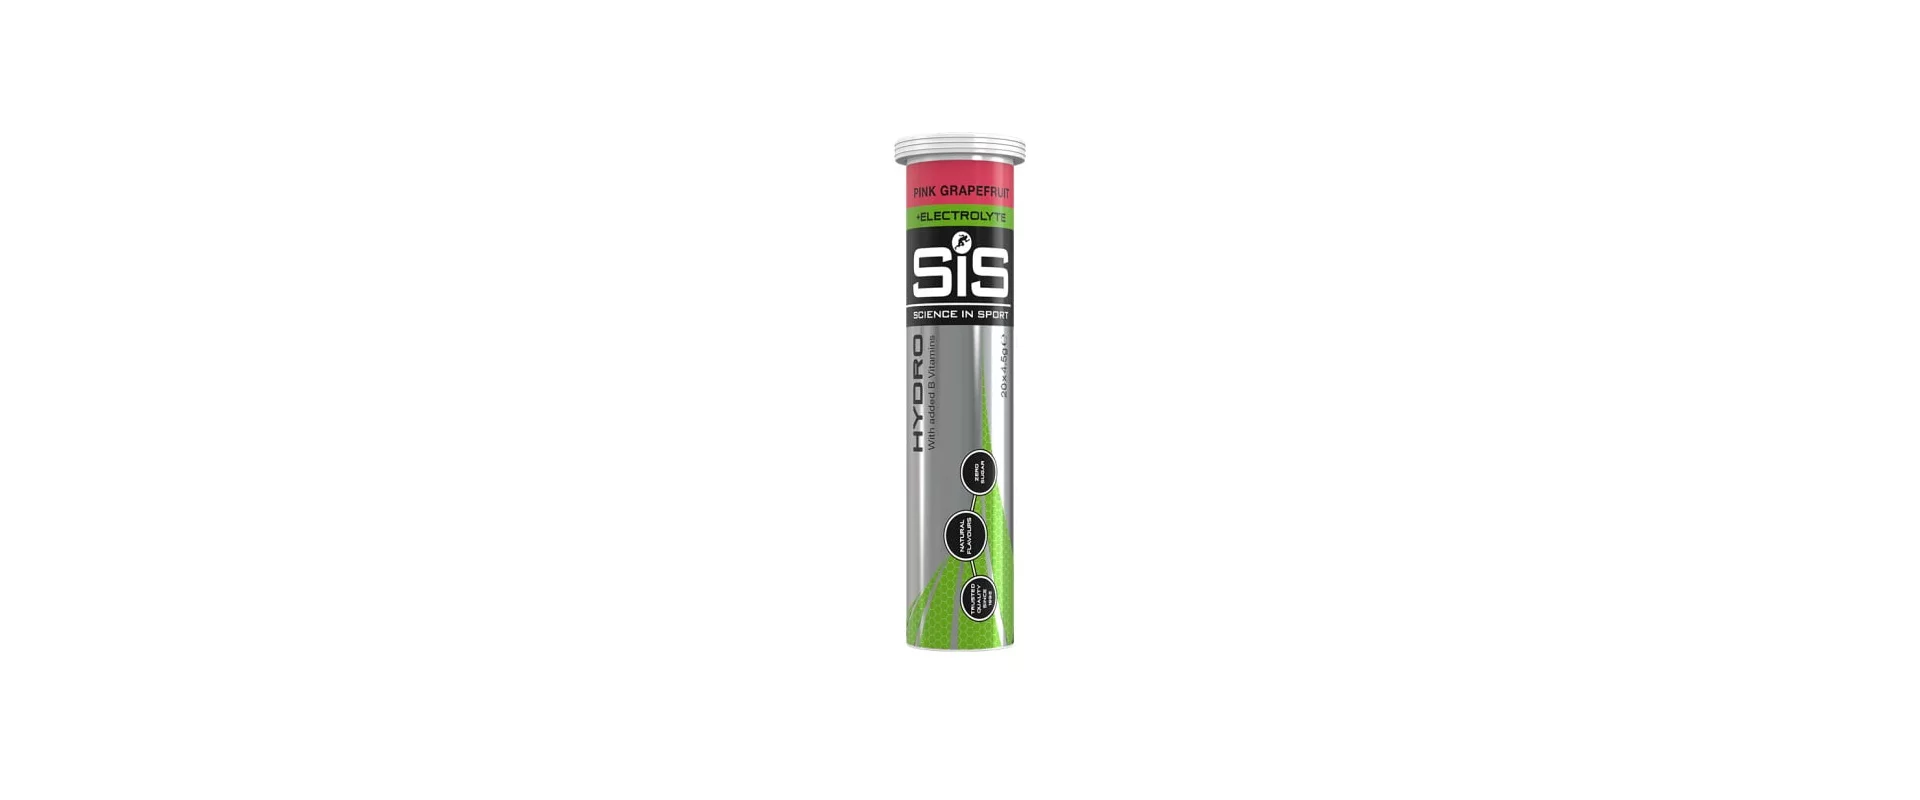 SIS Go Hydro Розовый грейпфрут / Гипотоник в шипучих таблетках (20pills*4.5gE)